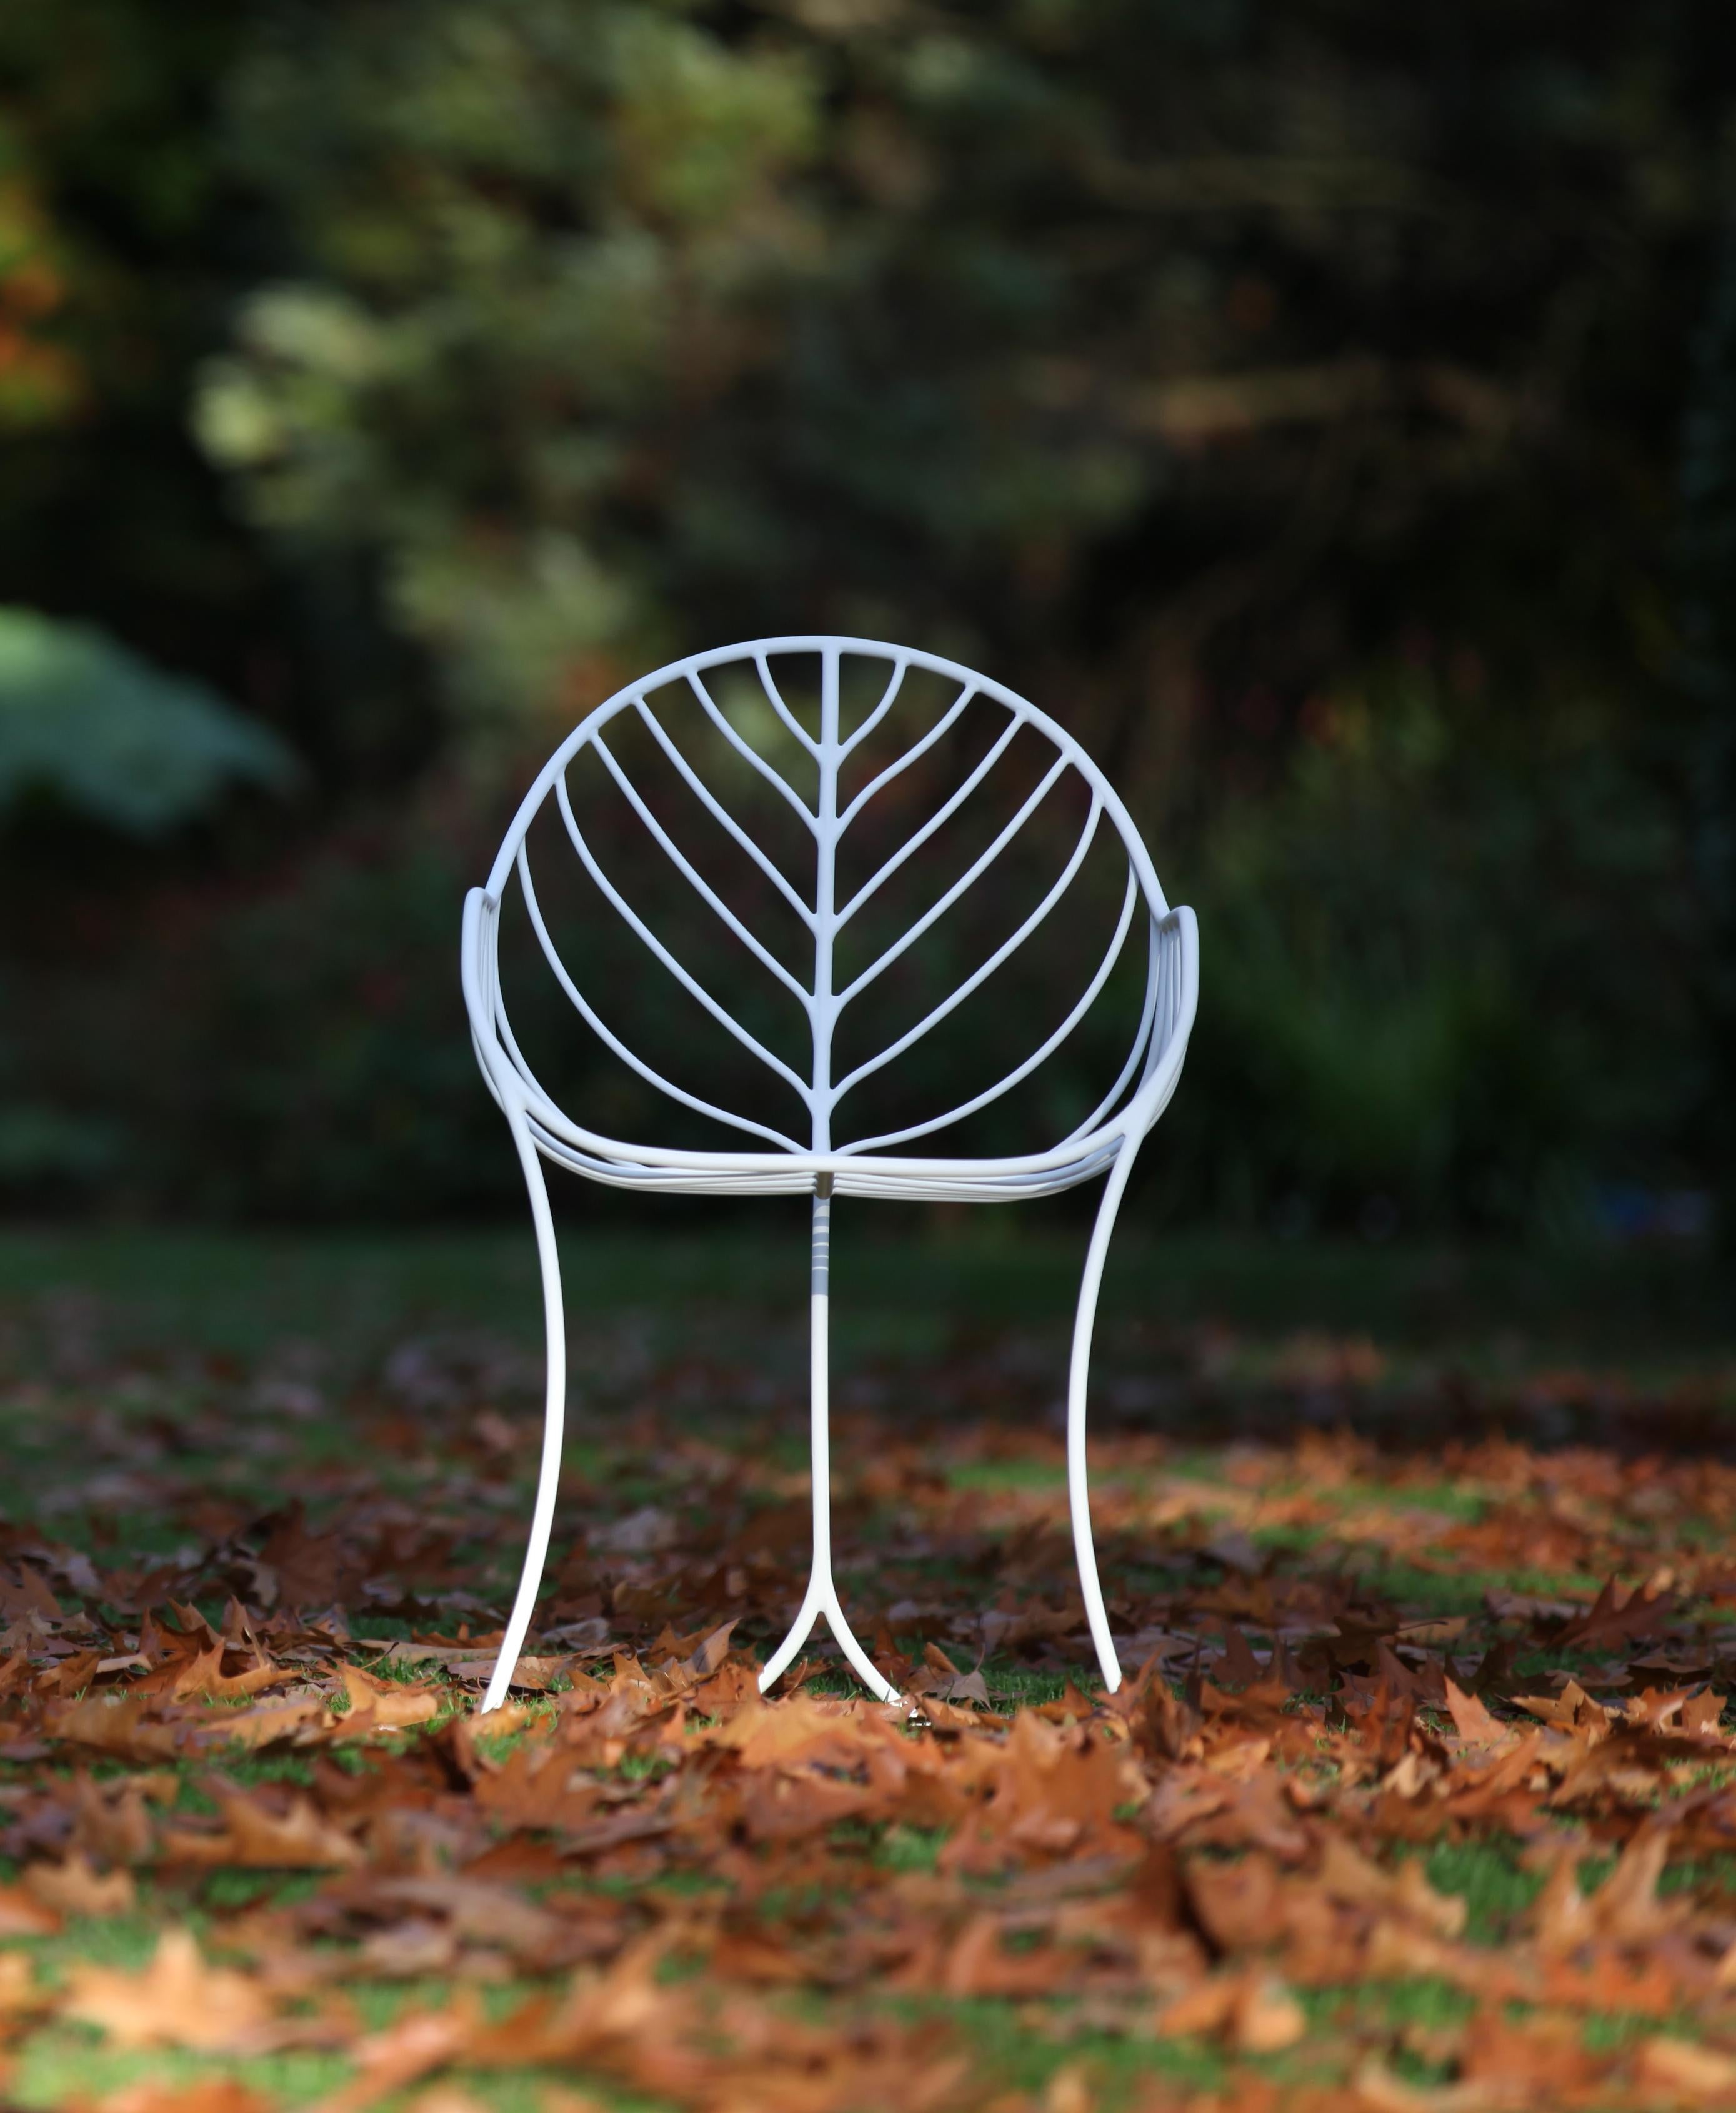 Le fauteuil Folia, conçu par Kris Van Puyvelde pour Royal Botania, est un vrai beau design basé sur la nature. Design/One inspiré par les nervures d'une feuille. Ce fauteuil de salle à manger d'extérieur est disponible en 6 finitions différentes